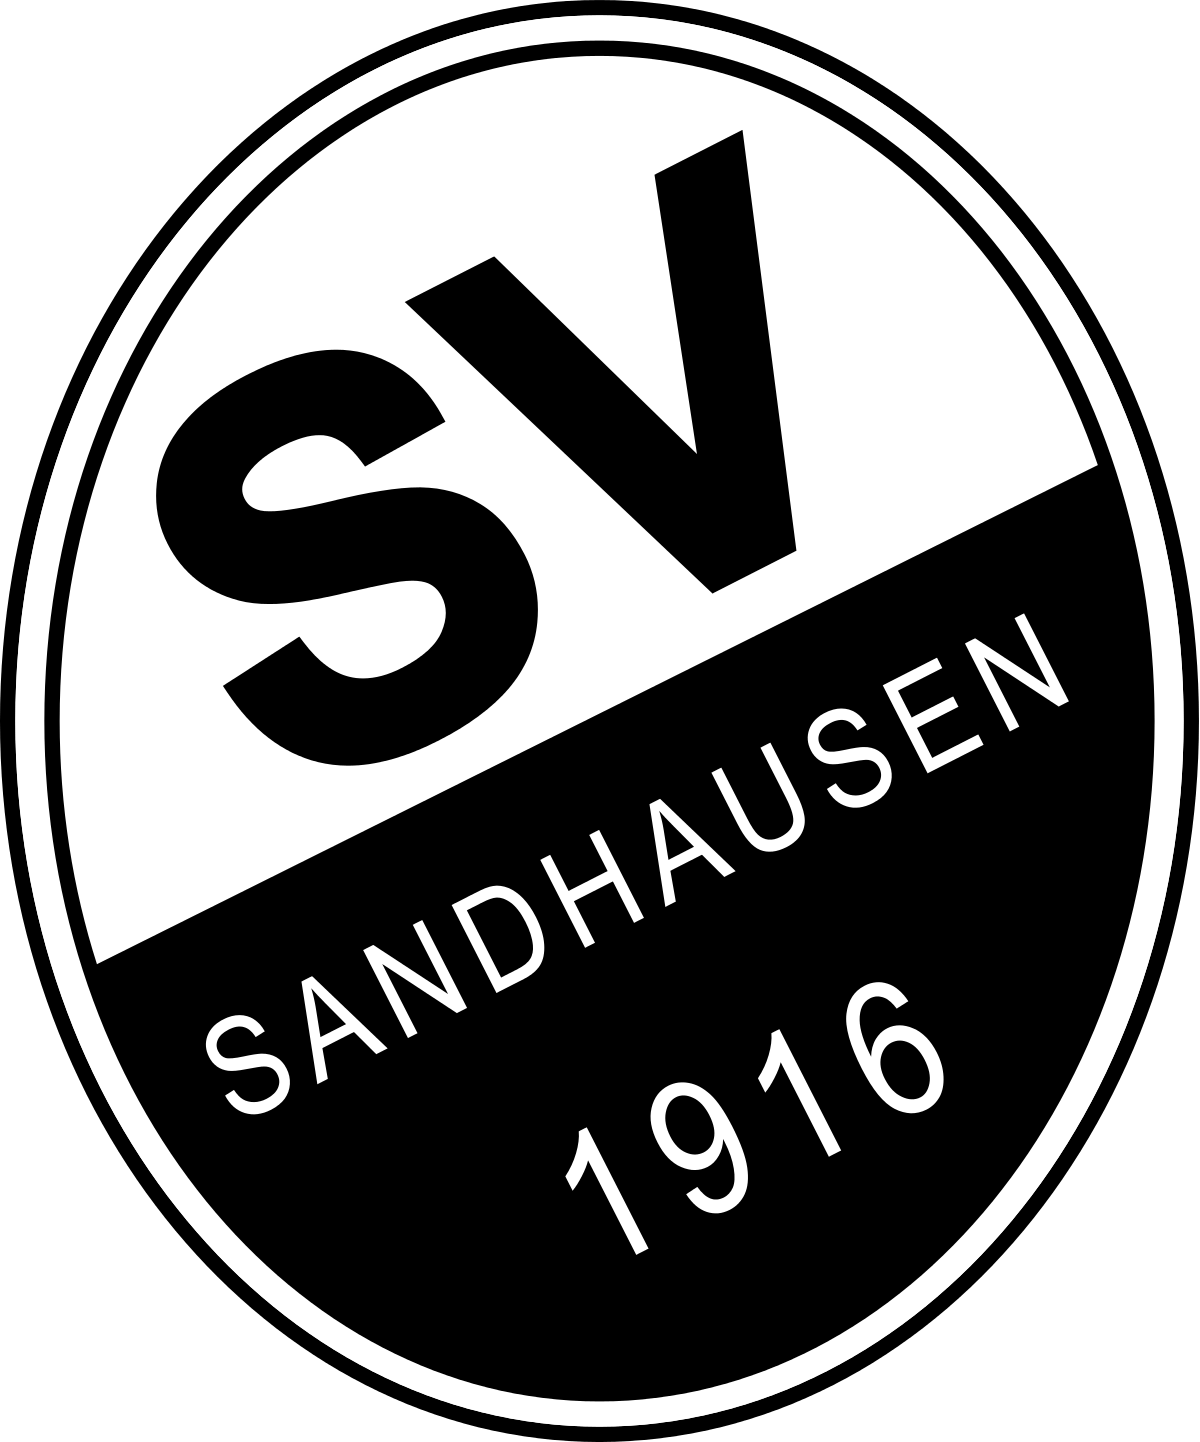 Vereinszahnarzt des SV Sandhausen